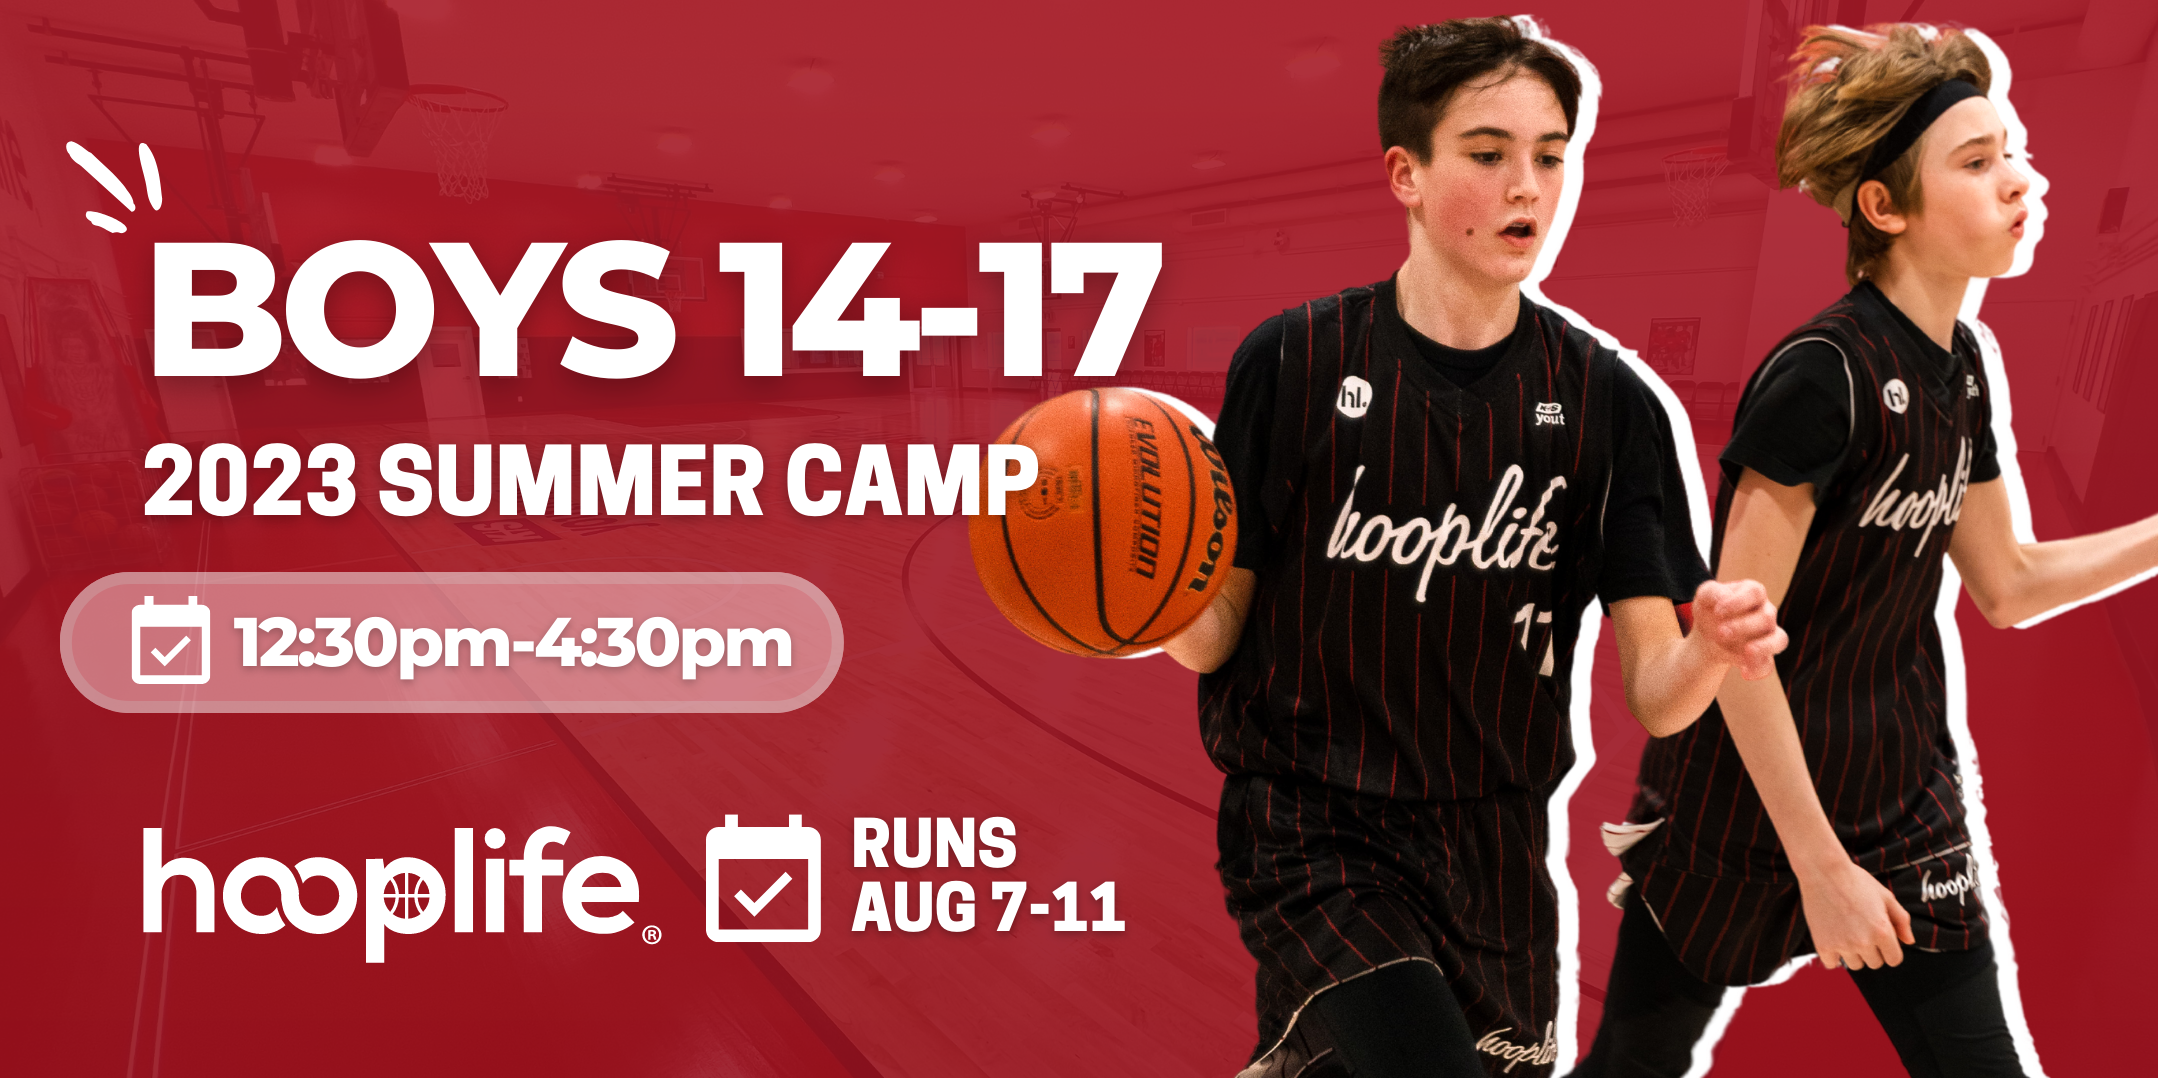 Boys 14-17 Summer Camp | Aug 7-11